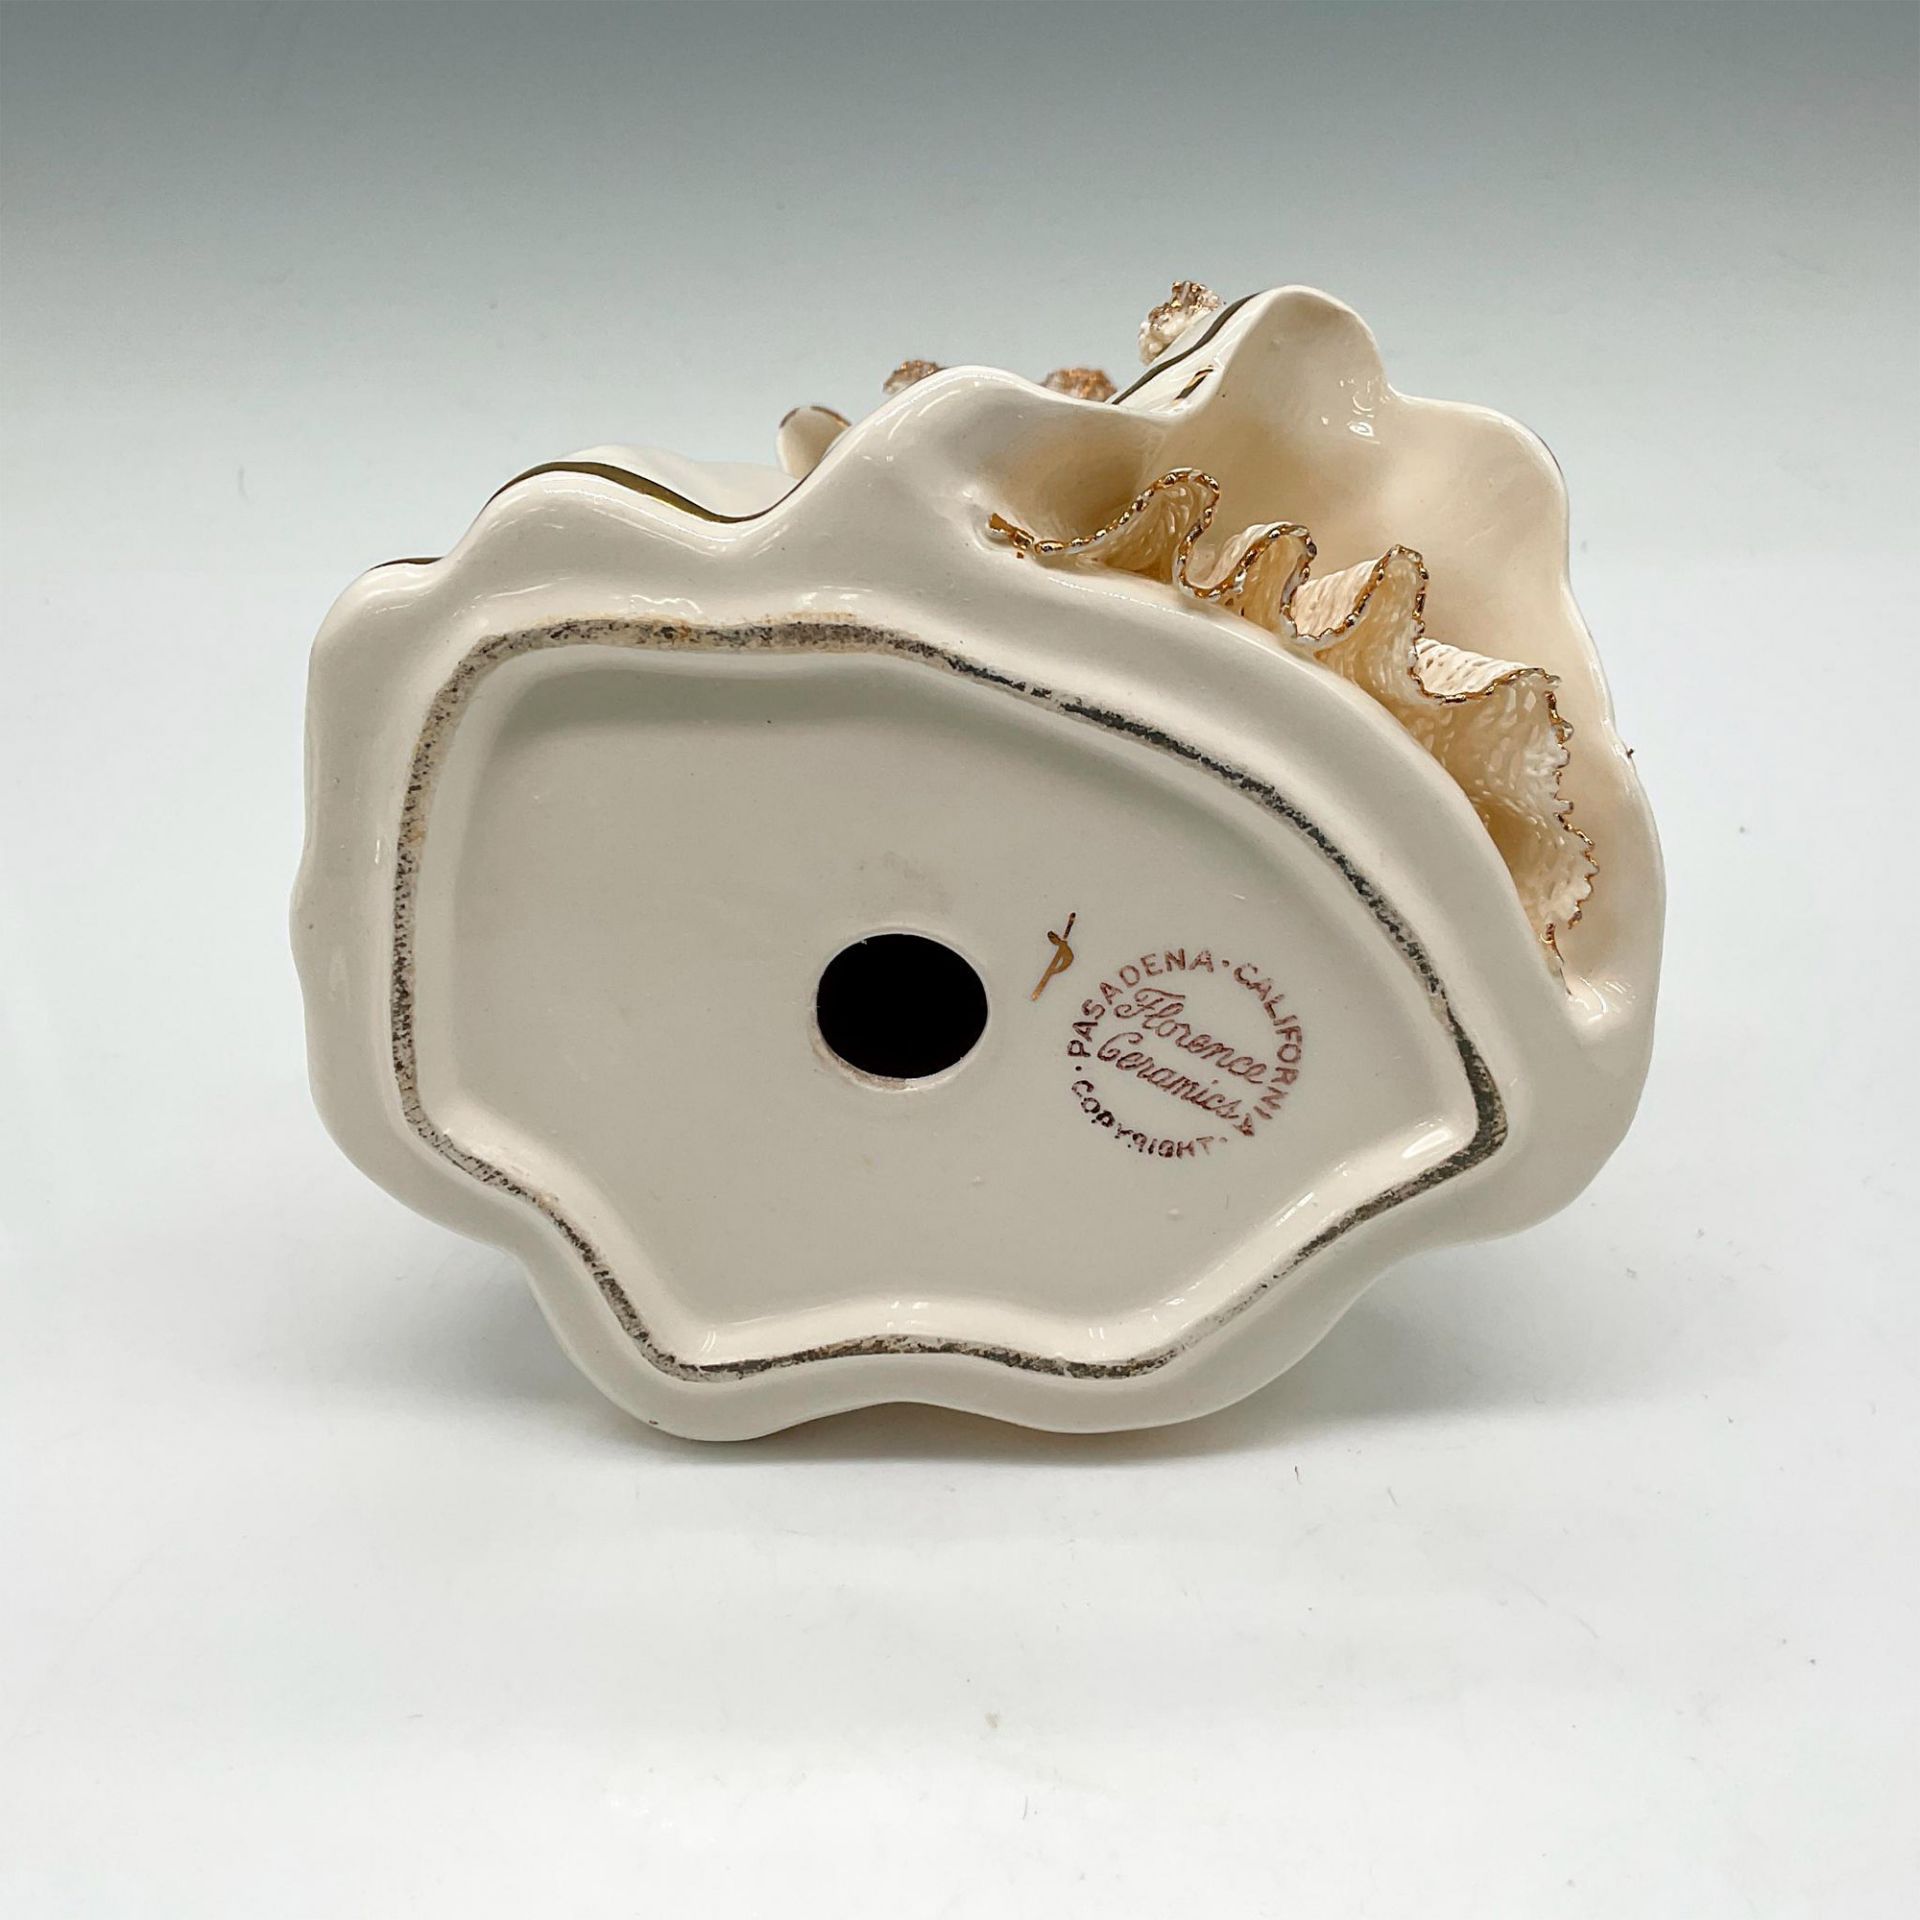 RARE Florence Ceramics Porcelain Figurine, Ruth - Image 3 of 3